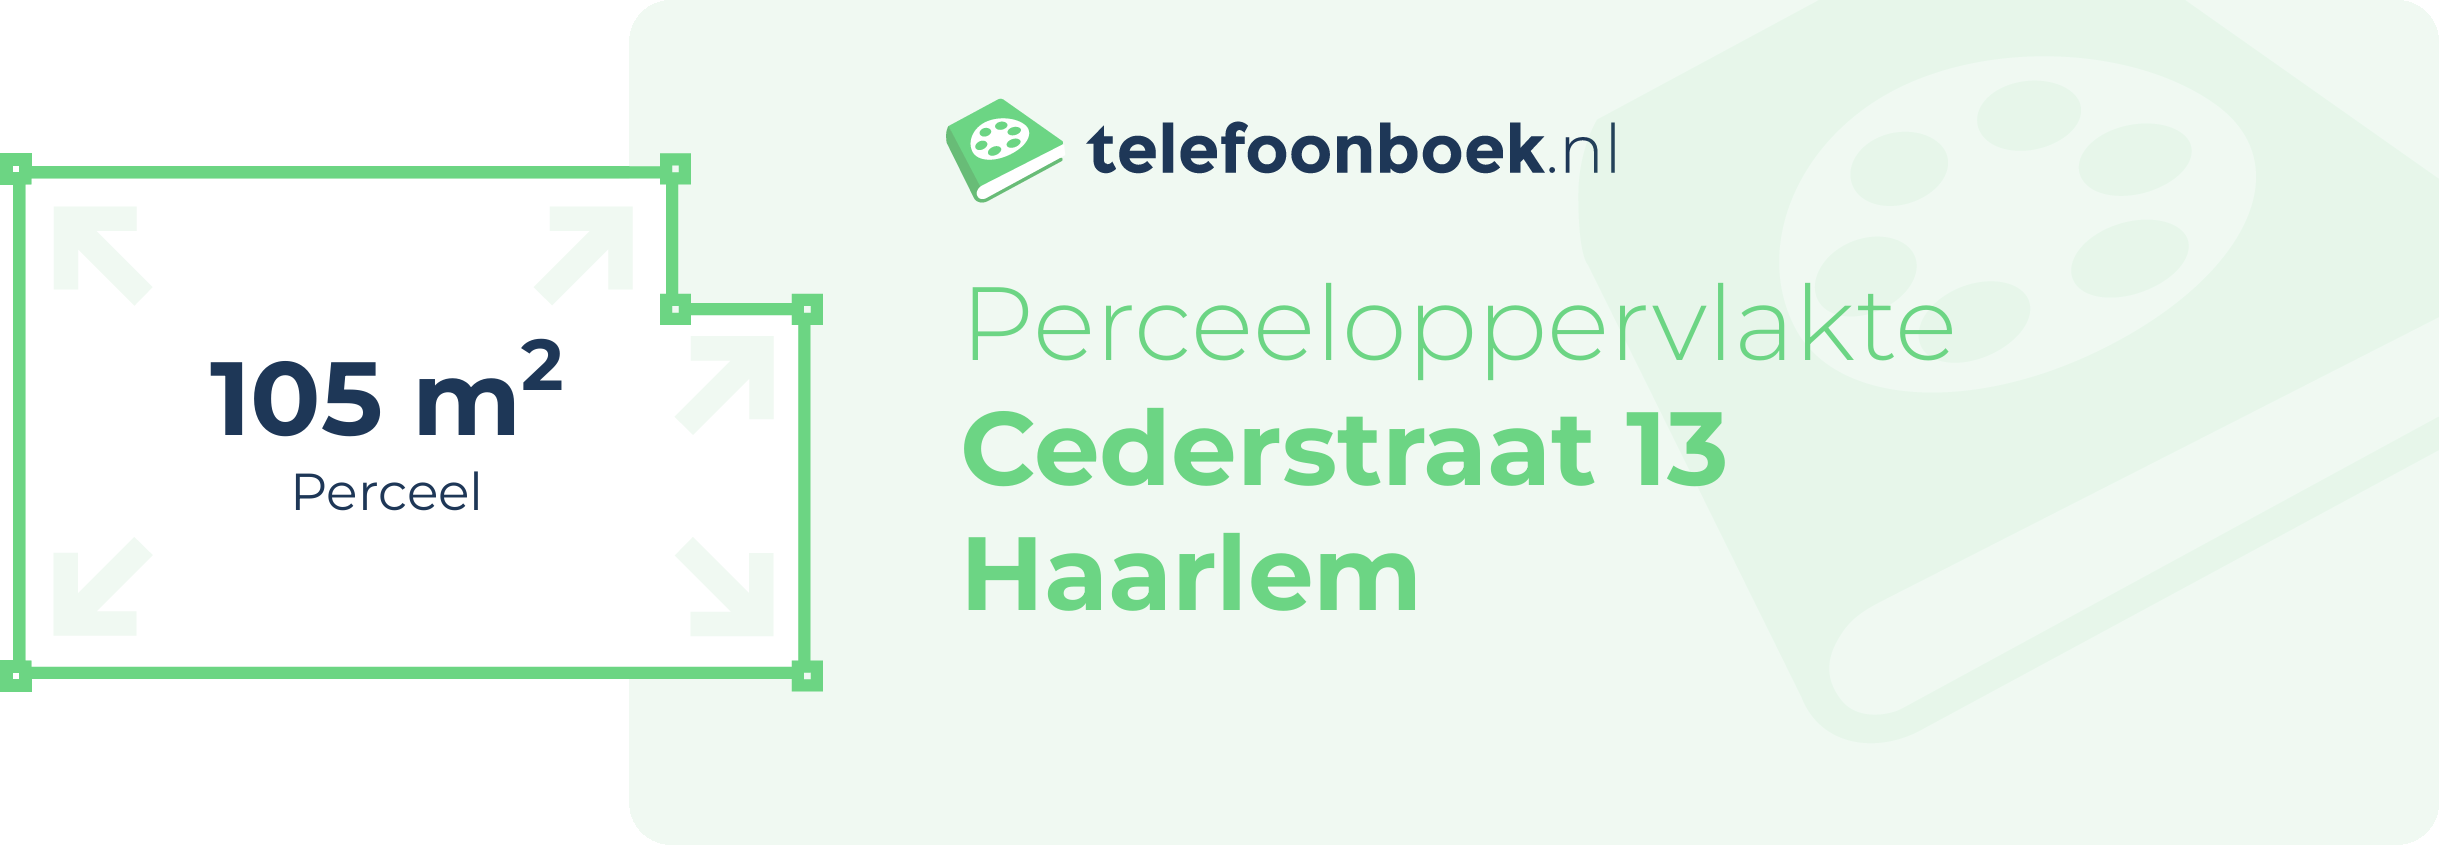 Perceeloppervlakte Cederstraat 13 Haarlem